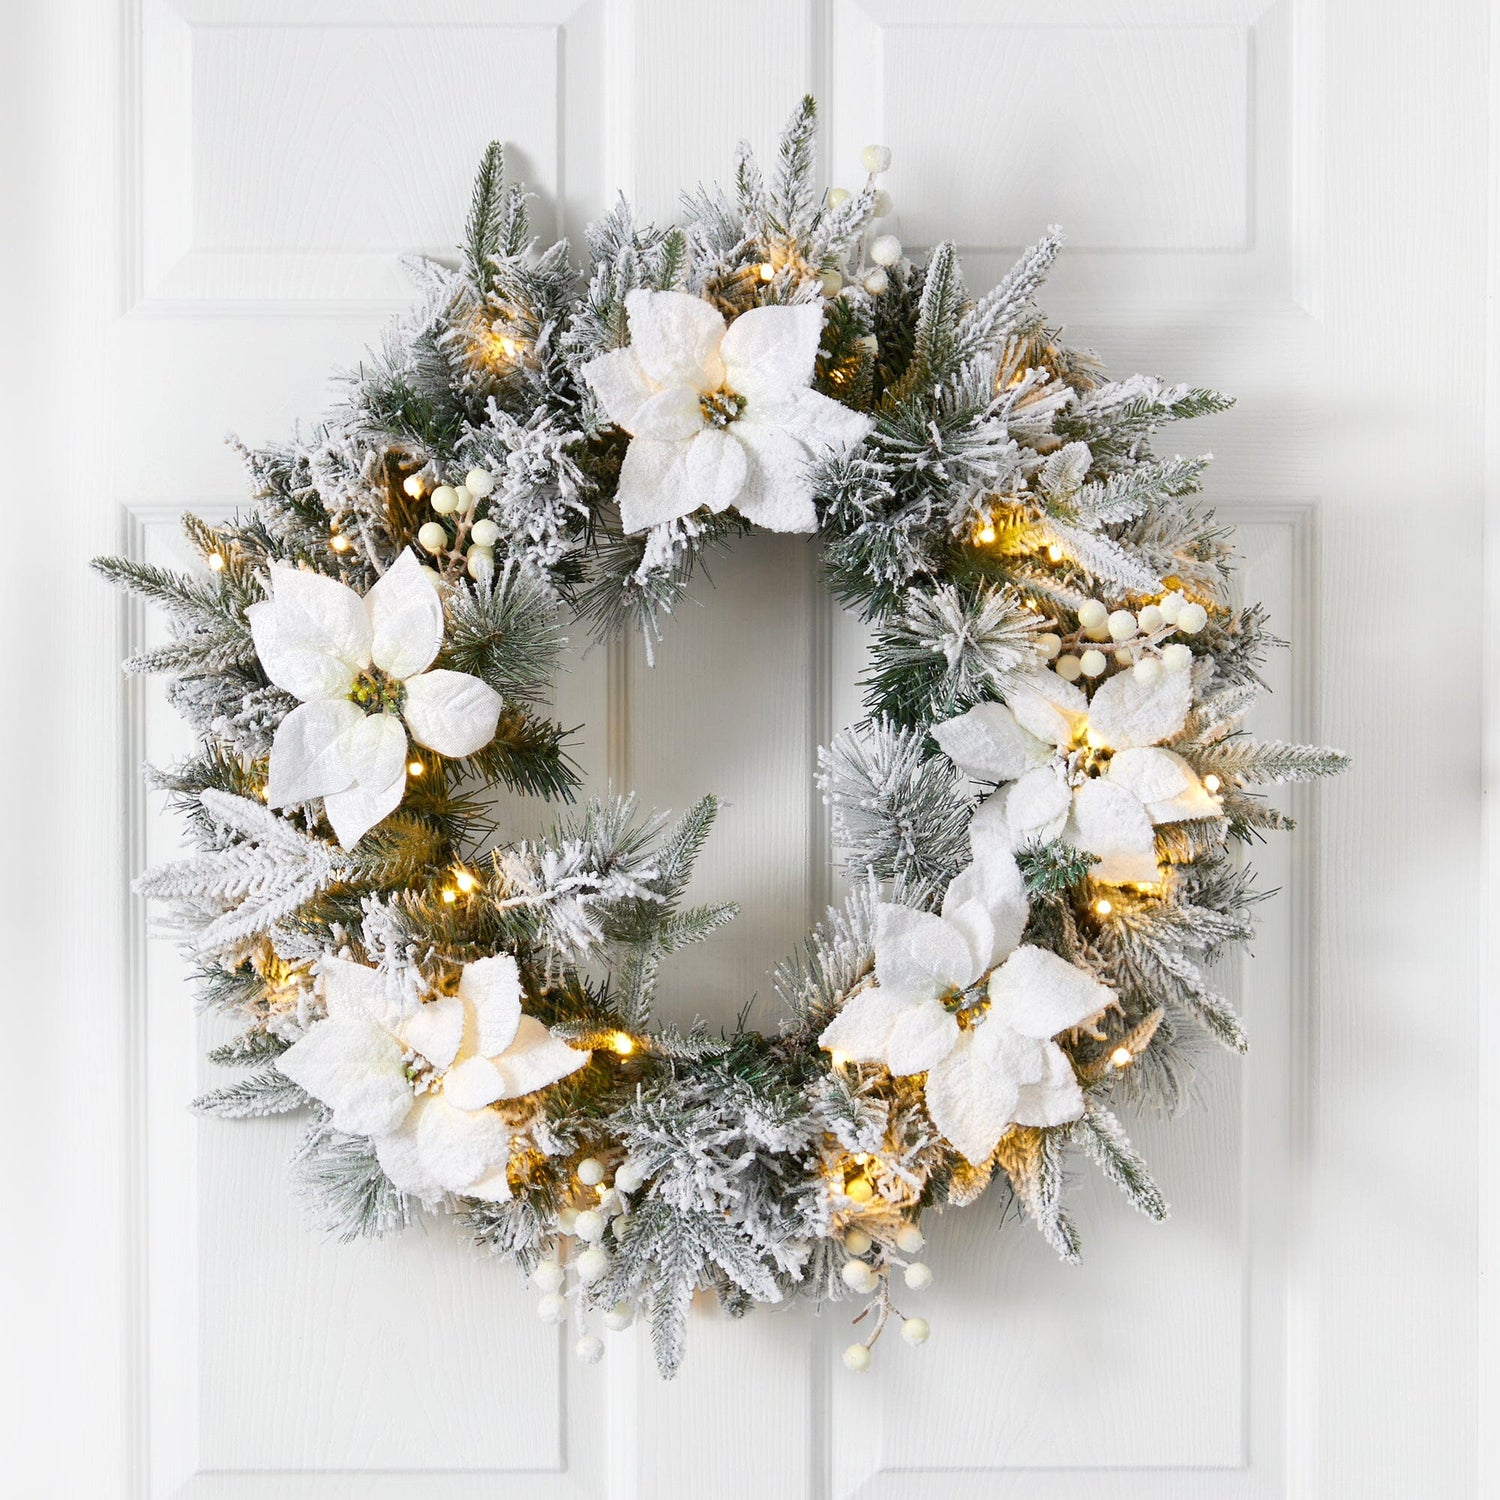 Regency Wreath Snowy Boxwood 24 in